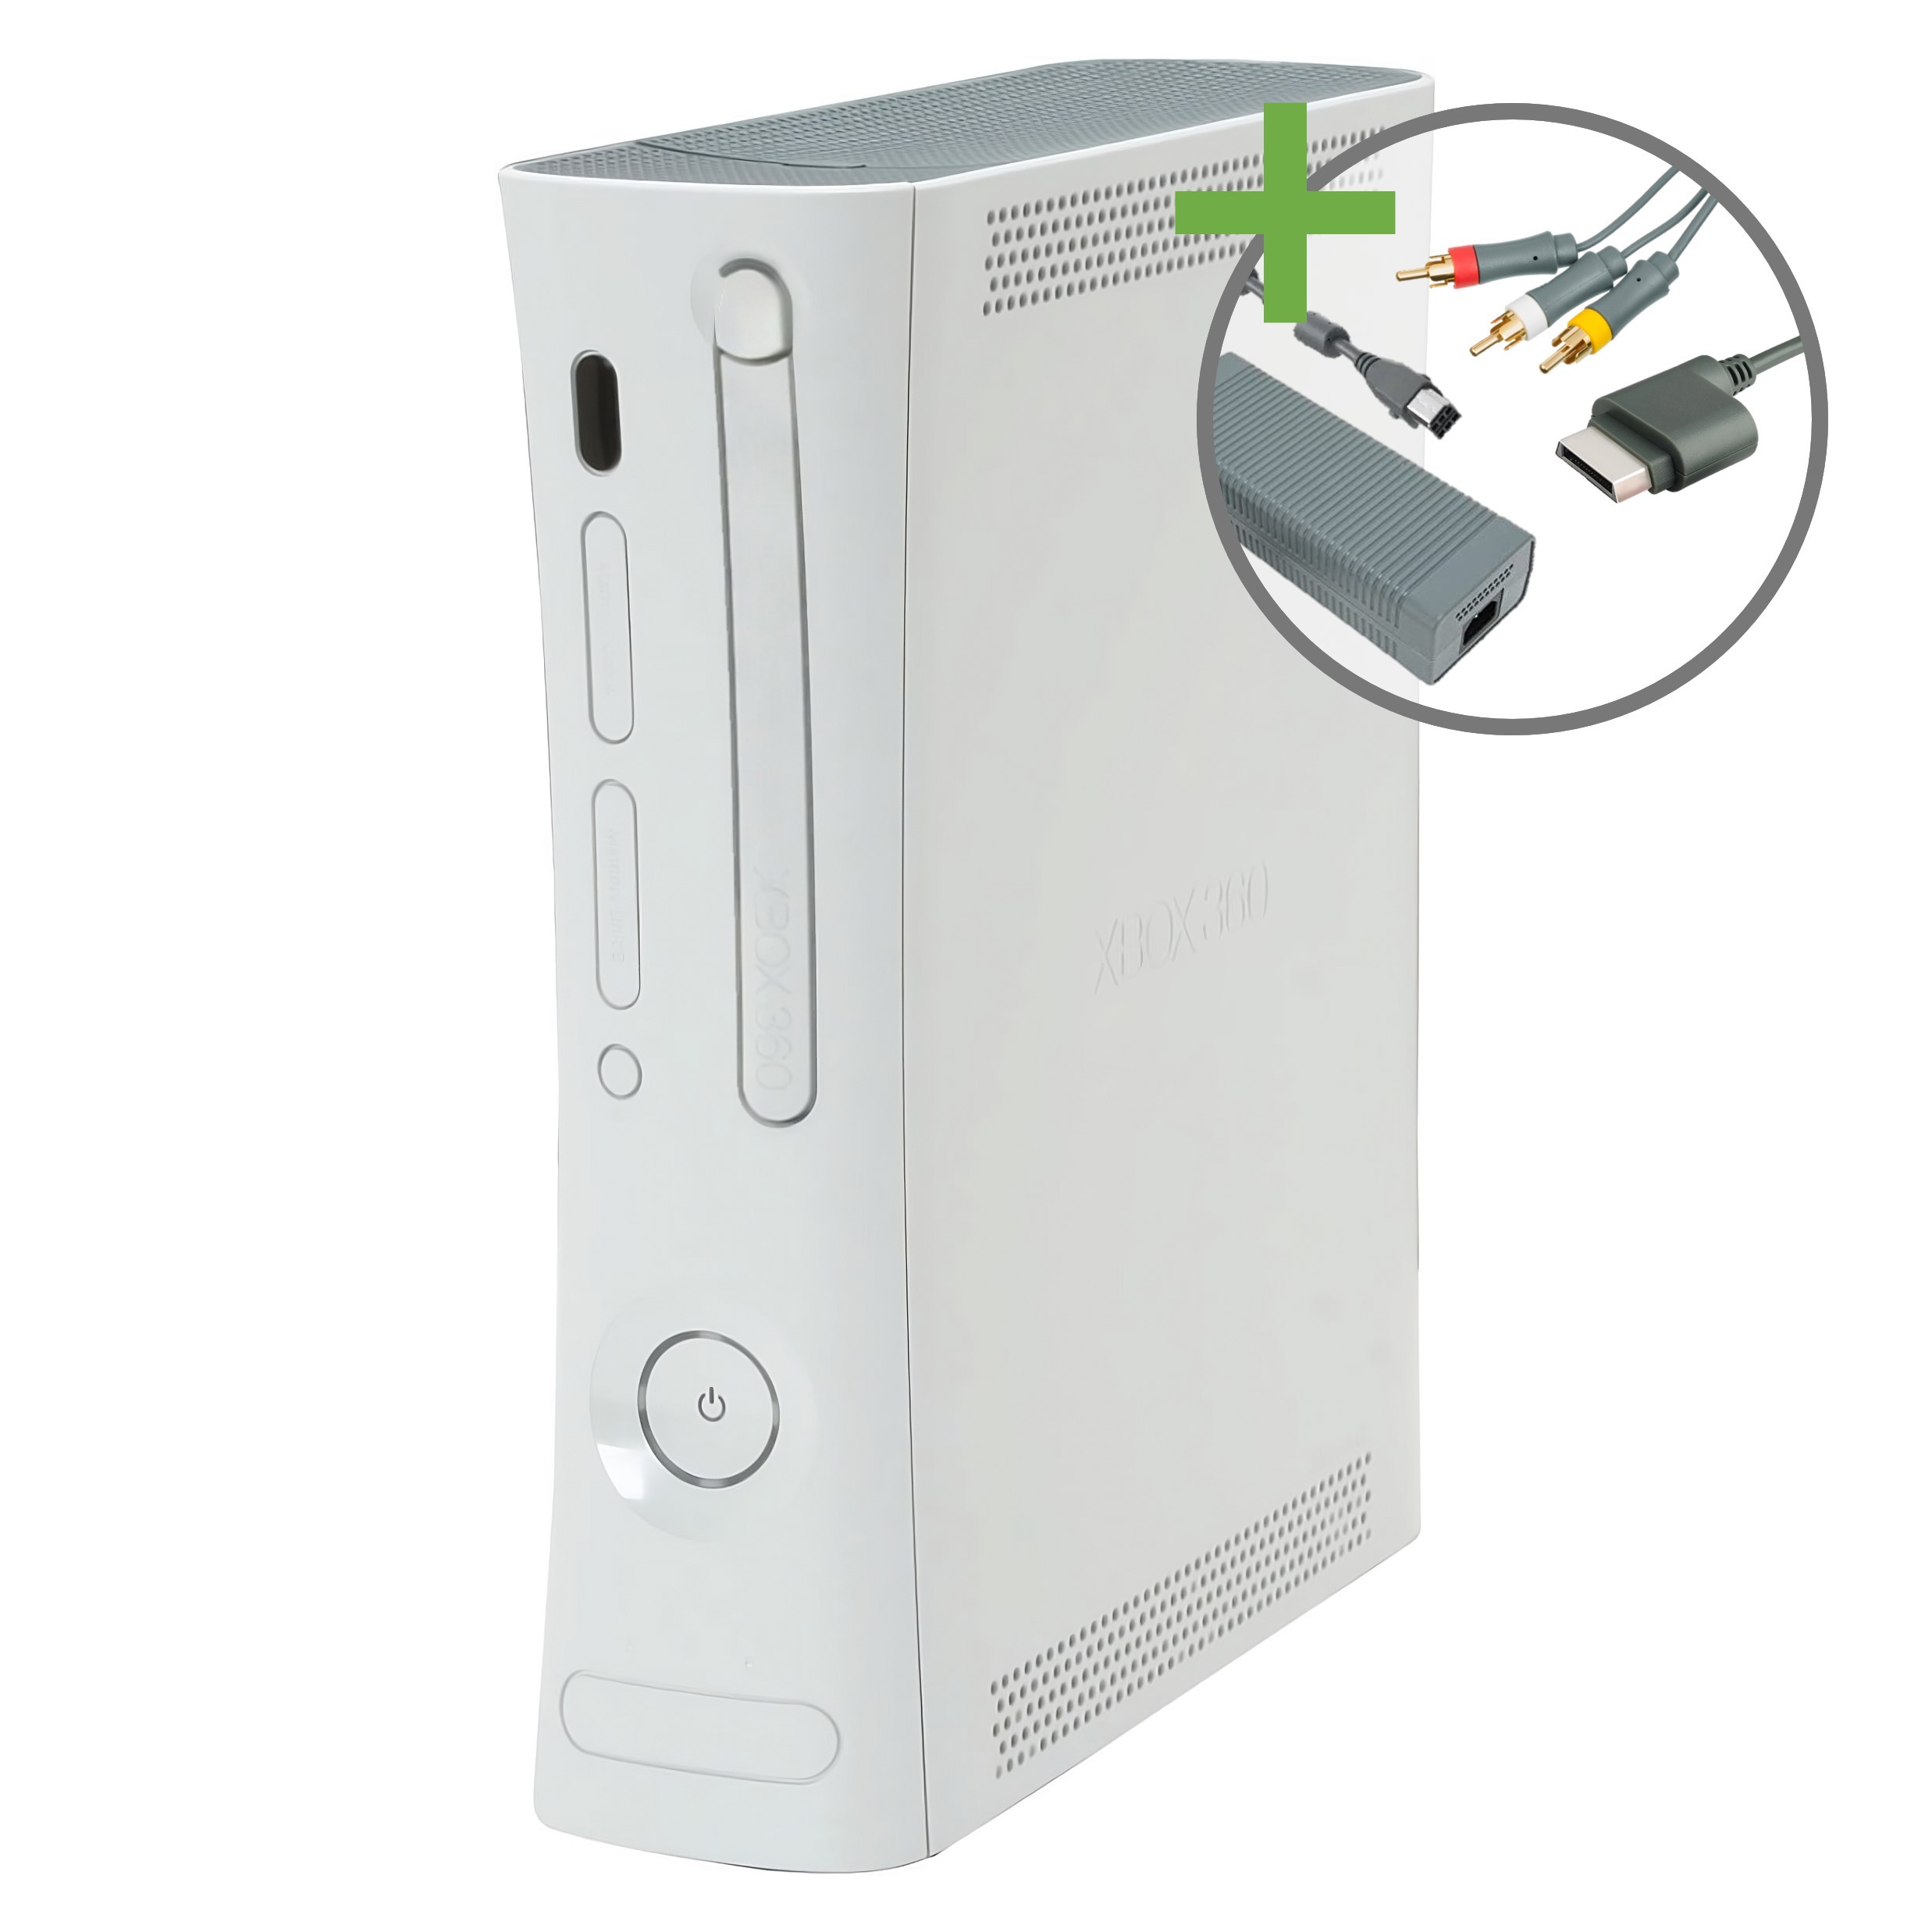 slaap Brood antwoord Xbox 360 Verkopen | Snel geregeld met 100% zekerheid.